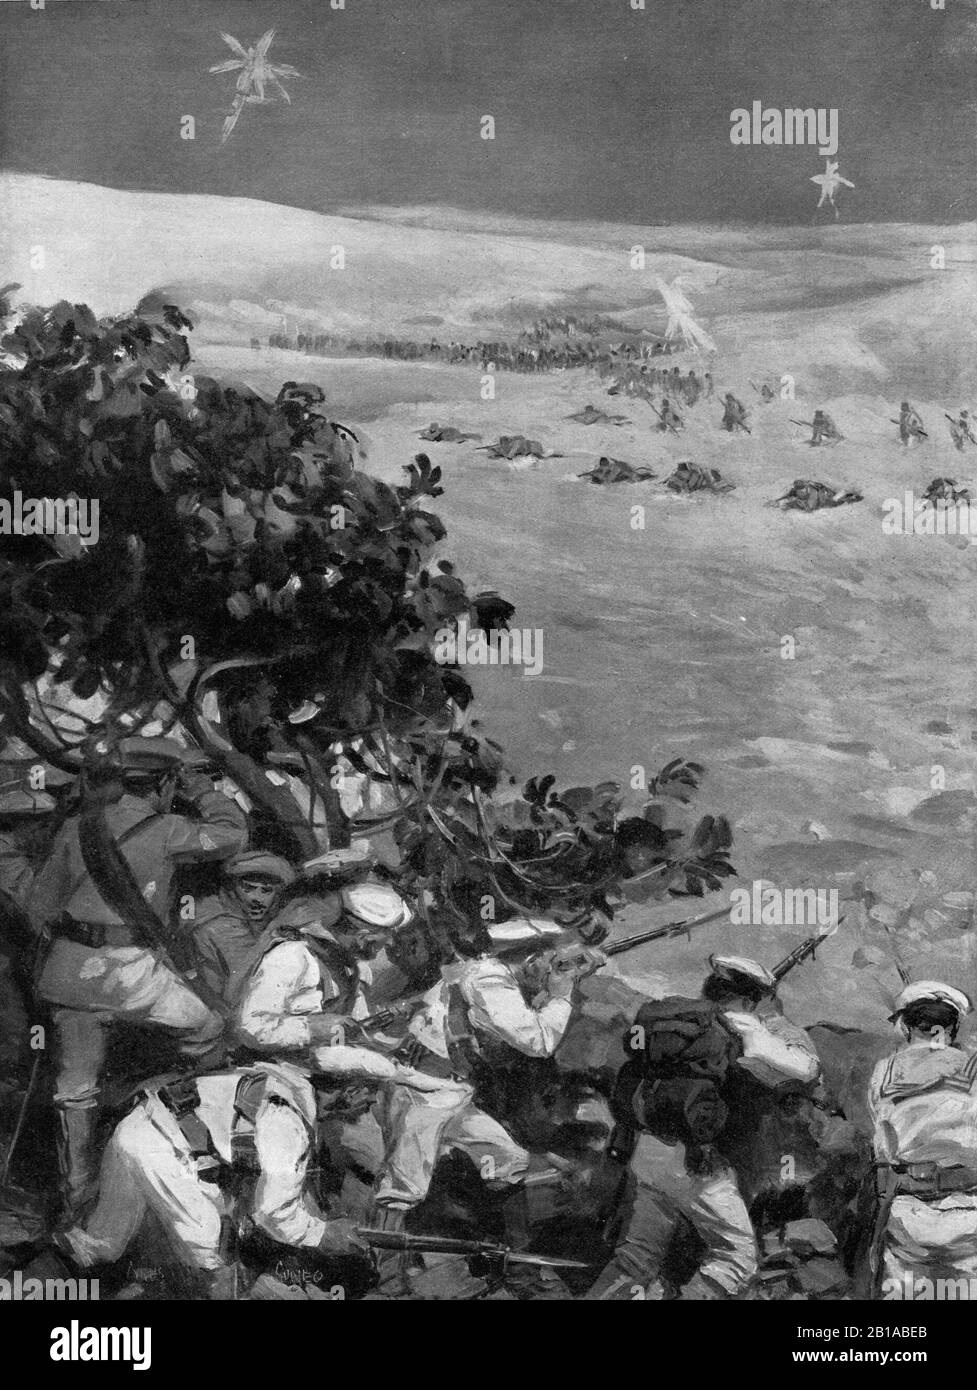 Eine Illustration um 1911 von Matrosen der Royal Italian Navy, die sich in der Nacht vom 9th 1911. Auf den 1911. Oktober in Libyen während des italienischen Türkenkrieges von 1912 auf gegen einen Angriff der türkischen Armee vor Tripolis verteidigten. Stockfoto